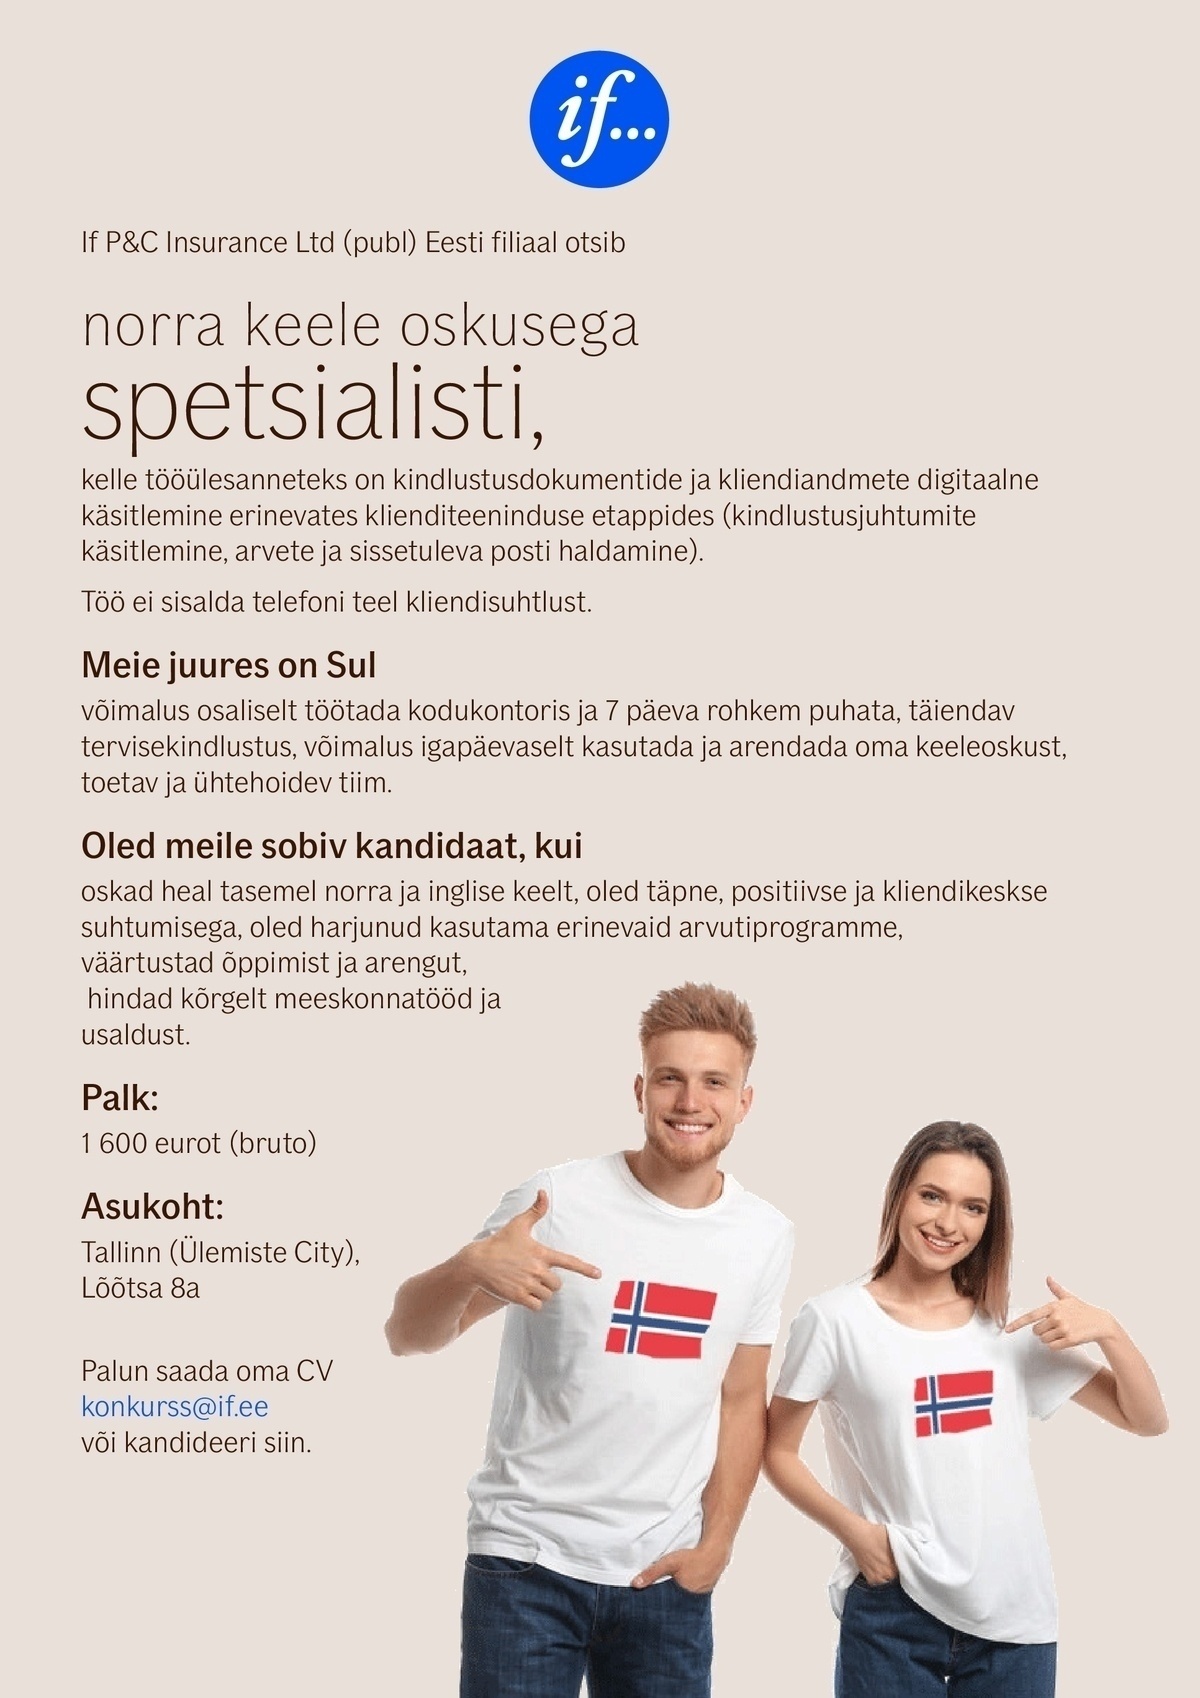 If P&C Insurance Ltd (publ) Eesti filiaal NORRA KEELE OSKUSEGA SPETSIALIST